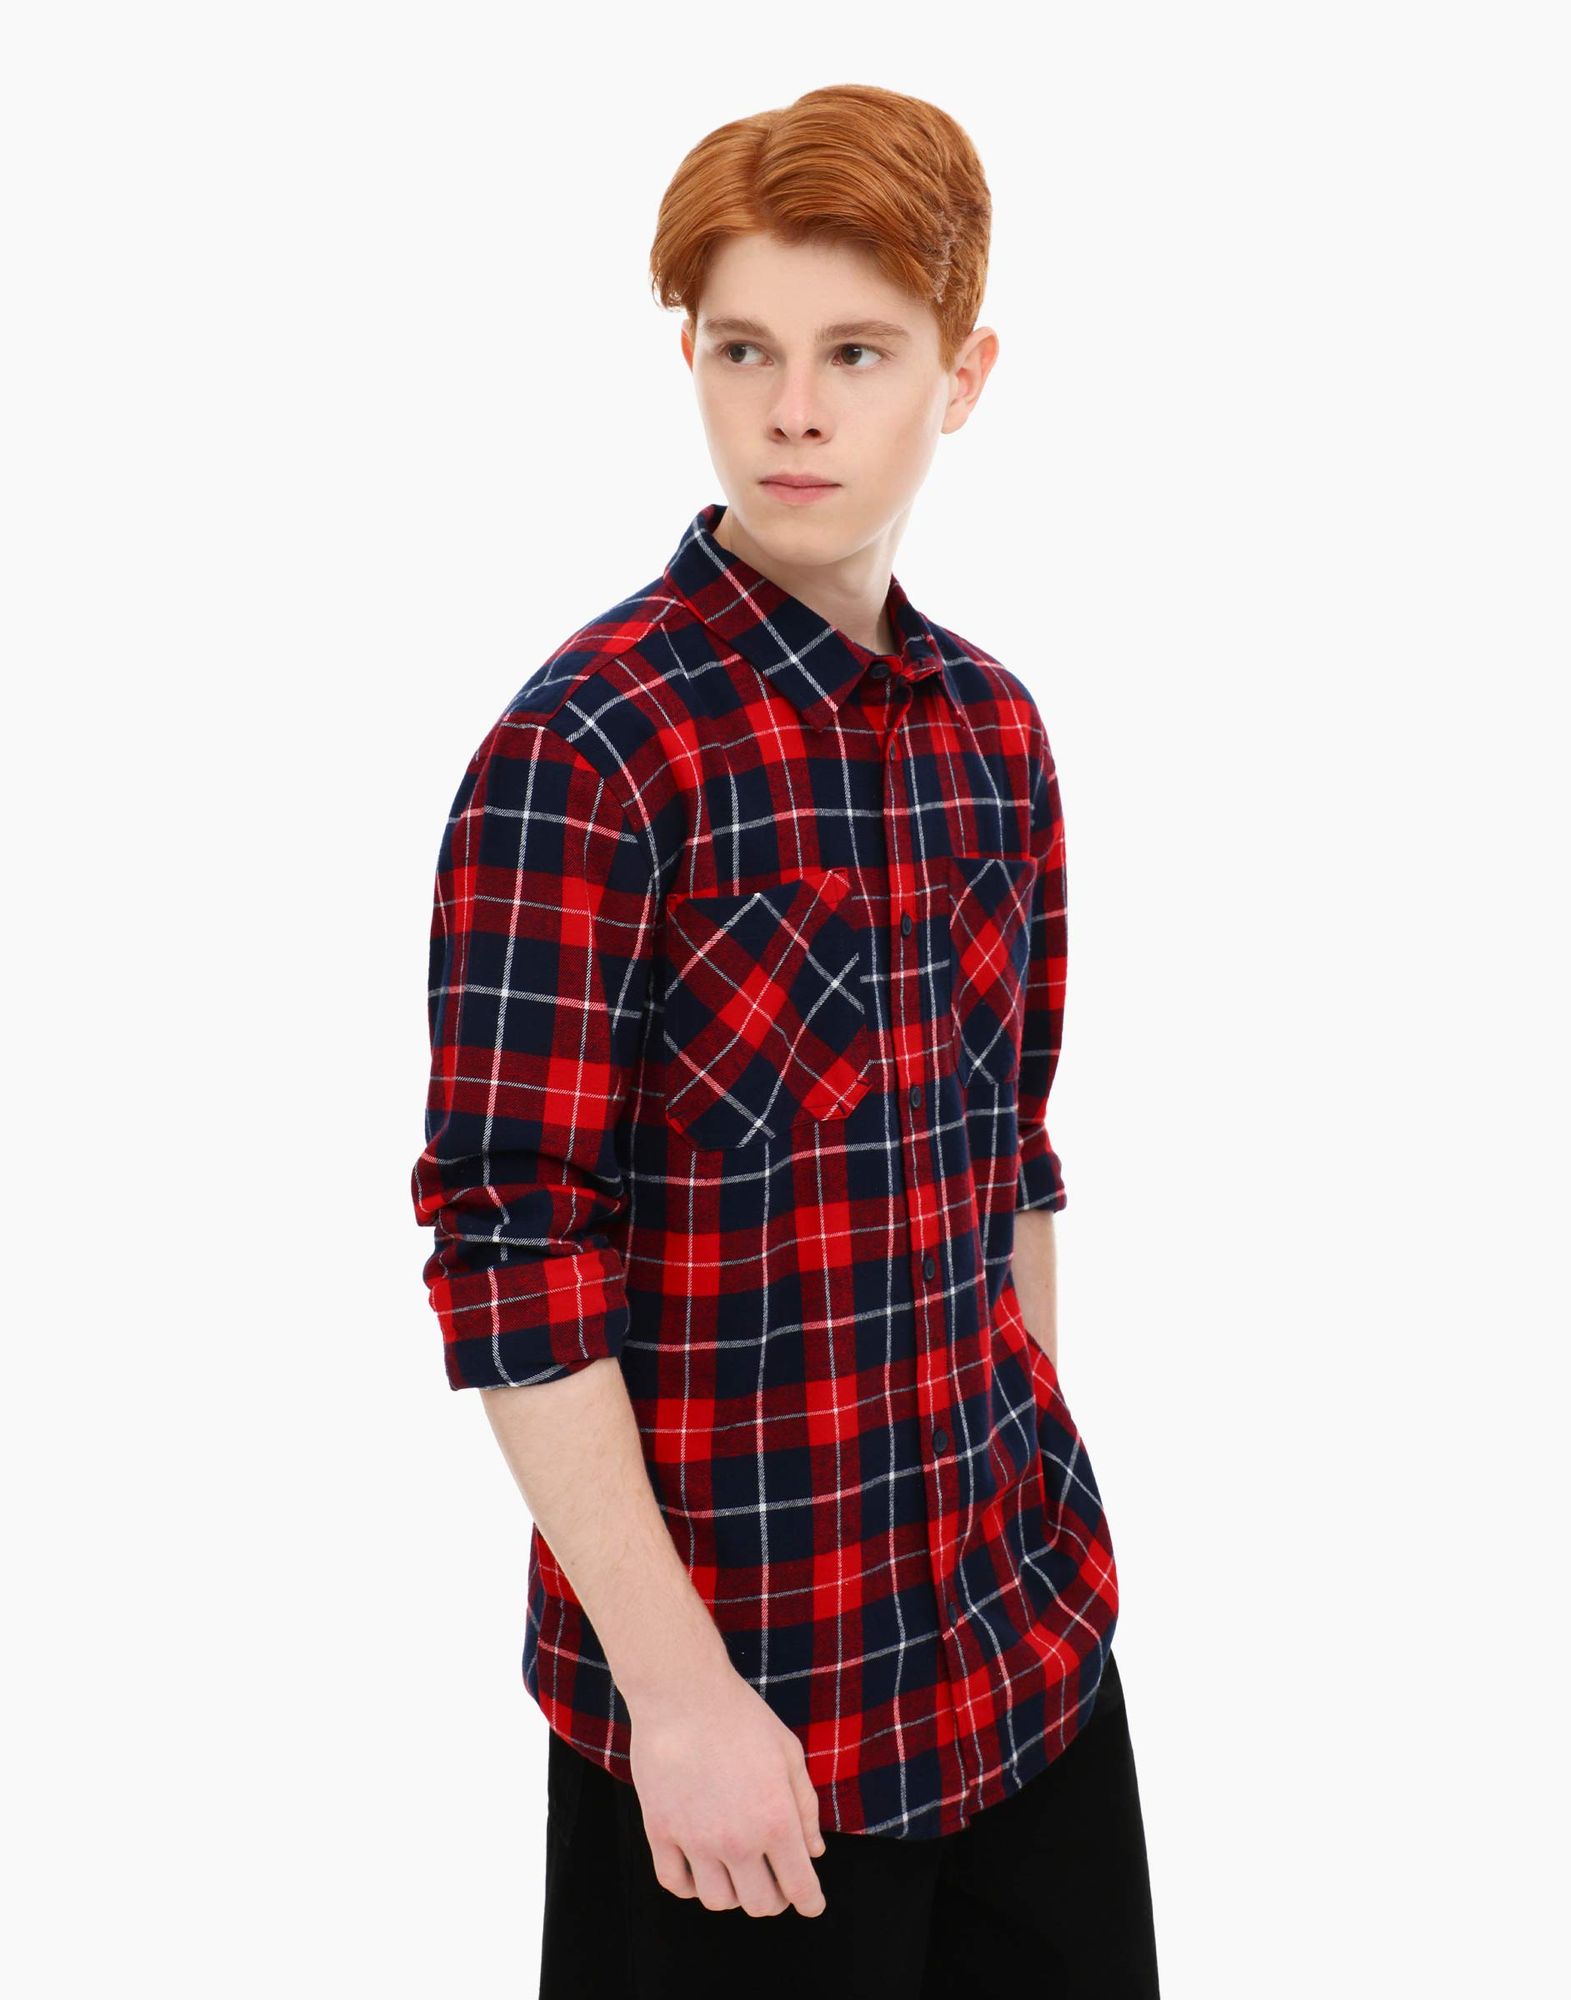 Красная клетчатая рубашка Comfort с карманами для мальчика-0